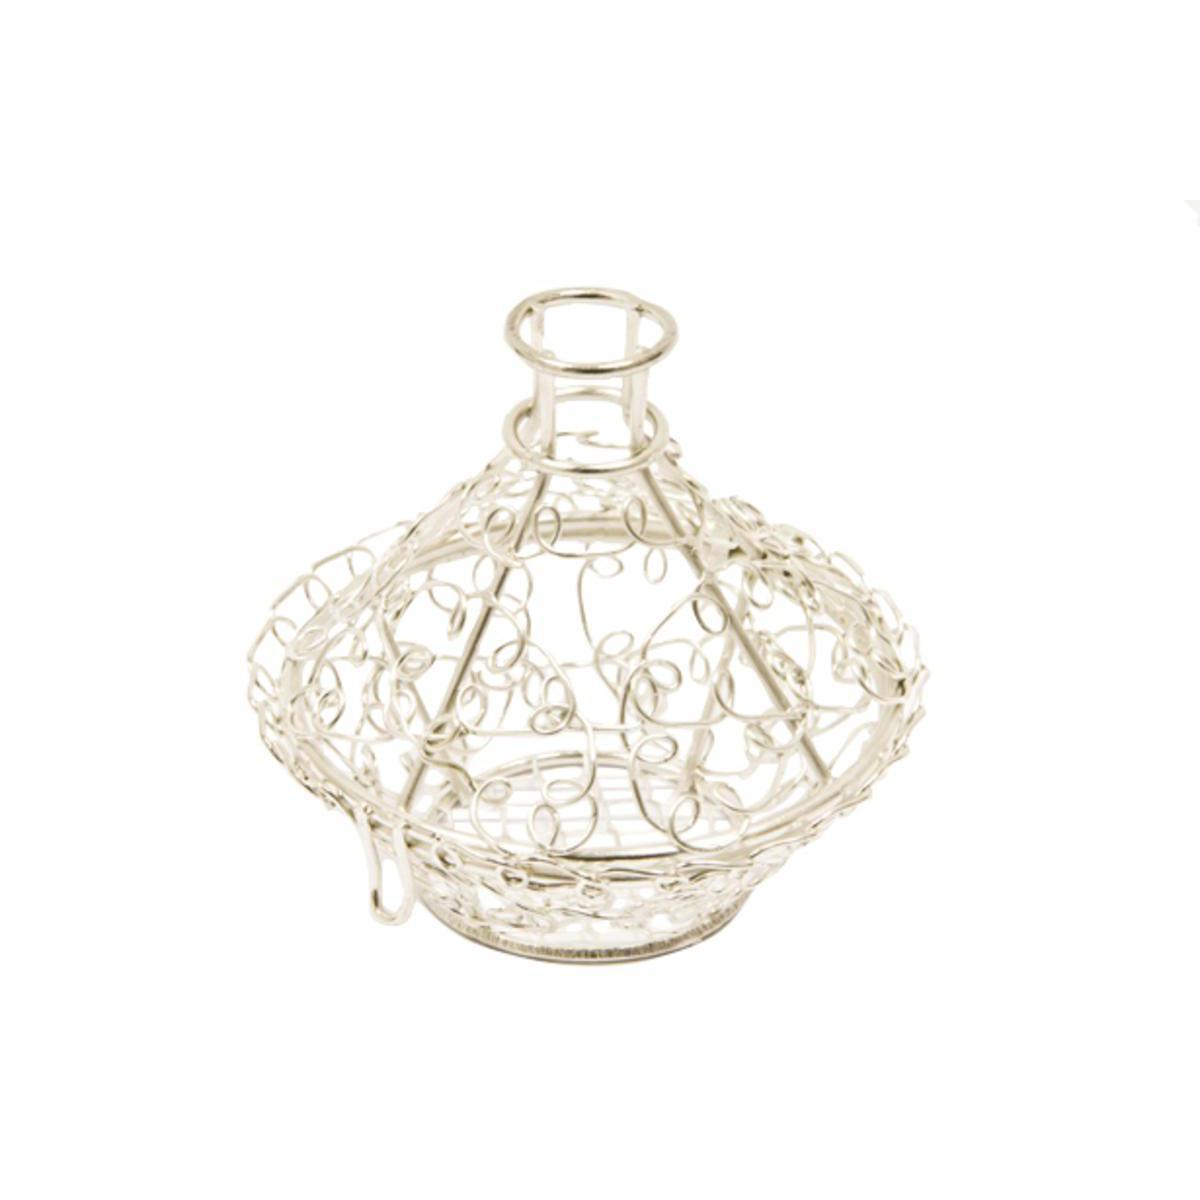 Boite en forme de tajine pour dragées - Acier - 6,5 x 6,5 cm - Argent